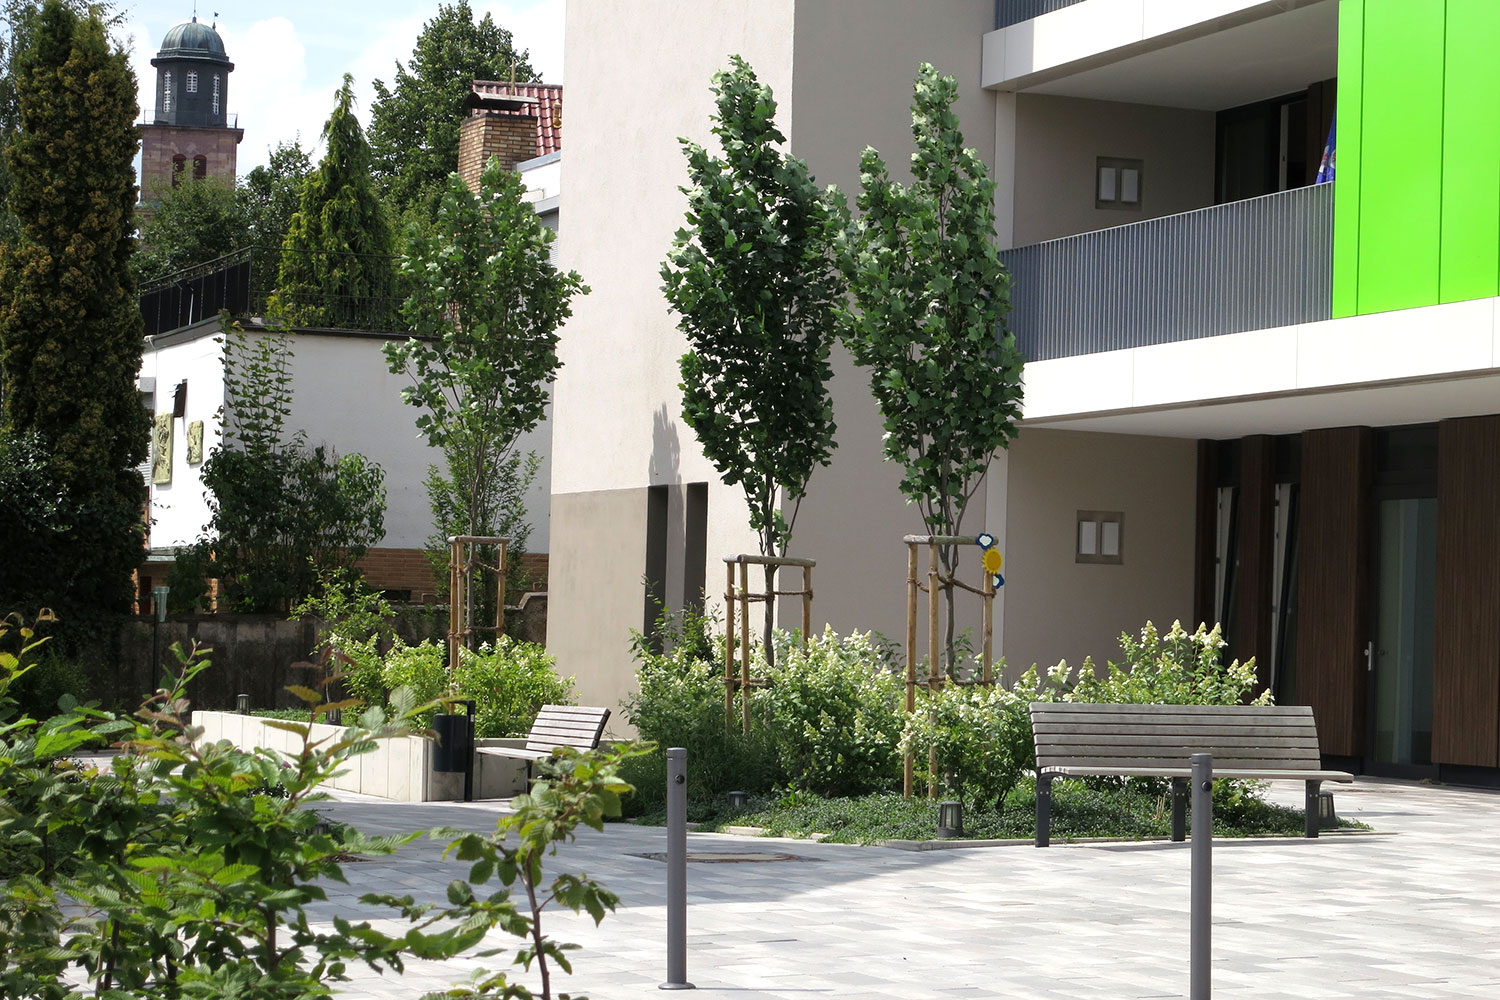 Profilbild von FREIRAUM Landschaftsarchitekten in Wiesbaden: Bepflanzungen vor einem Wohnhaus.